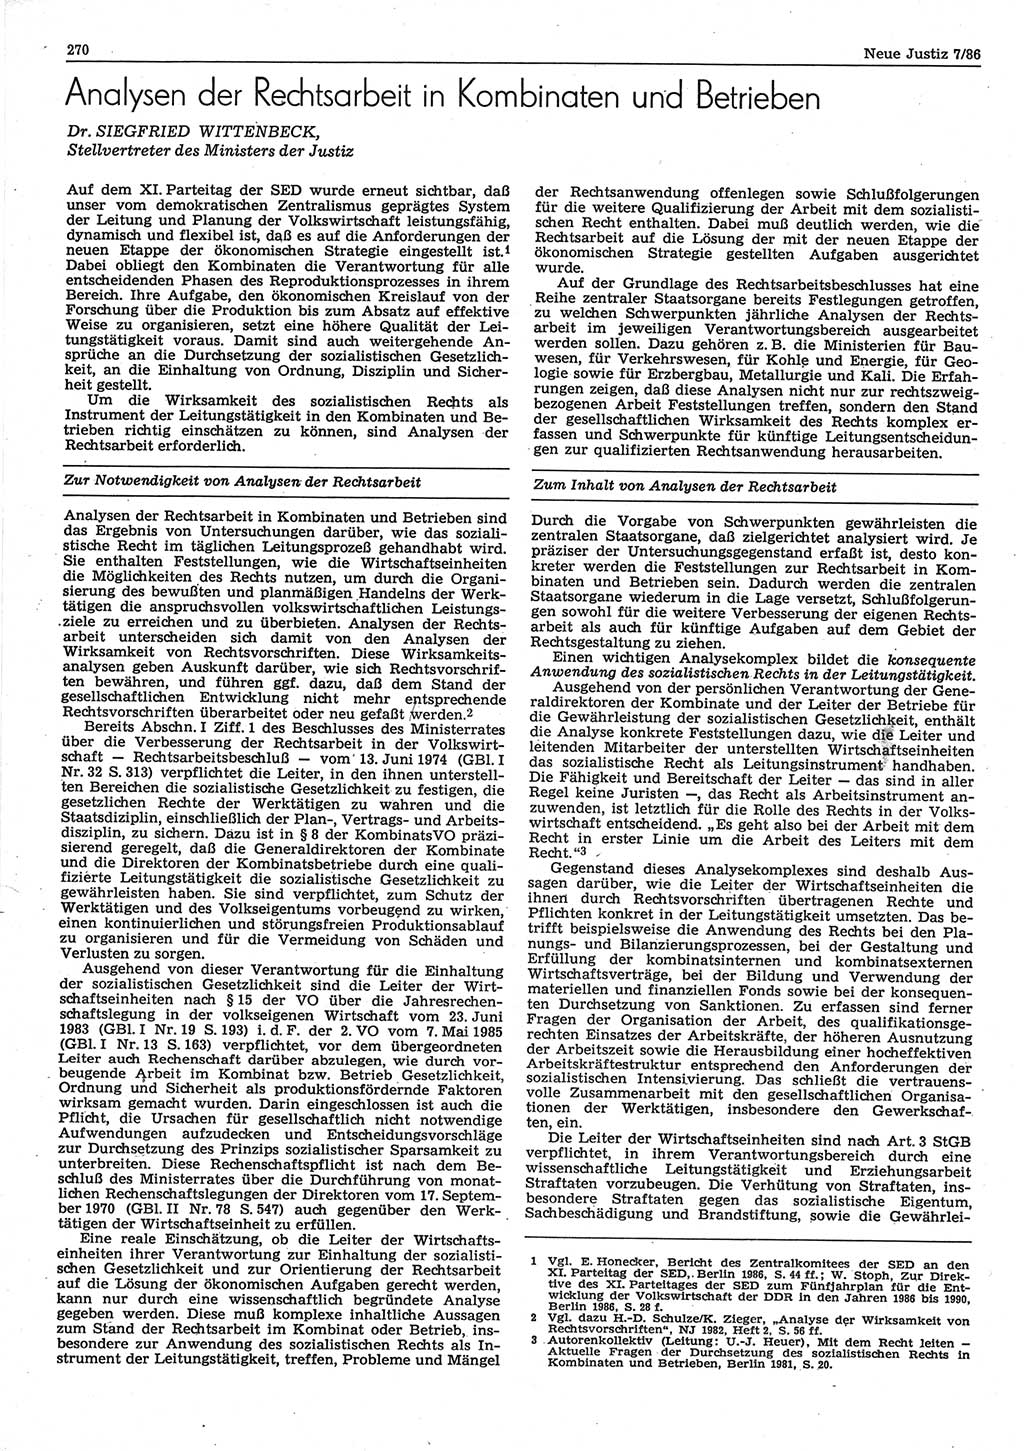 Neue Justiz (NJ), Zeitschrift für sozialistisches Recht und Gesetzlichkeit [Deutsche Demokratische Republik (DDR)], 40. Jahrgang 1986, Seite 270 (NJ DDR 1986, S. 270)